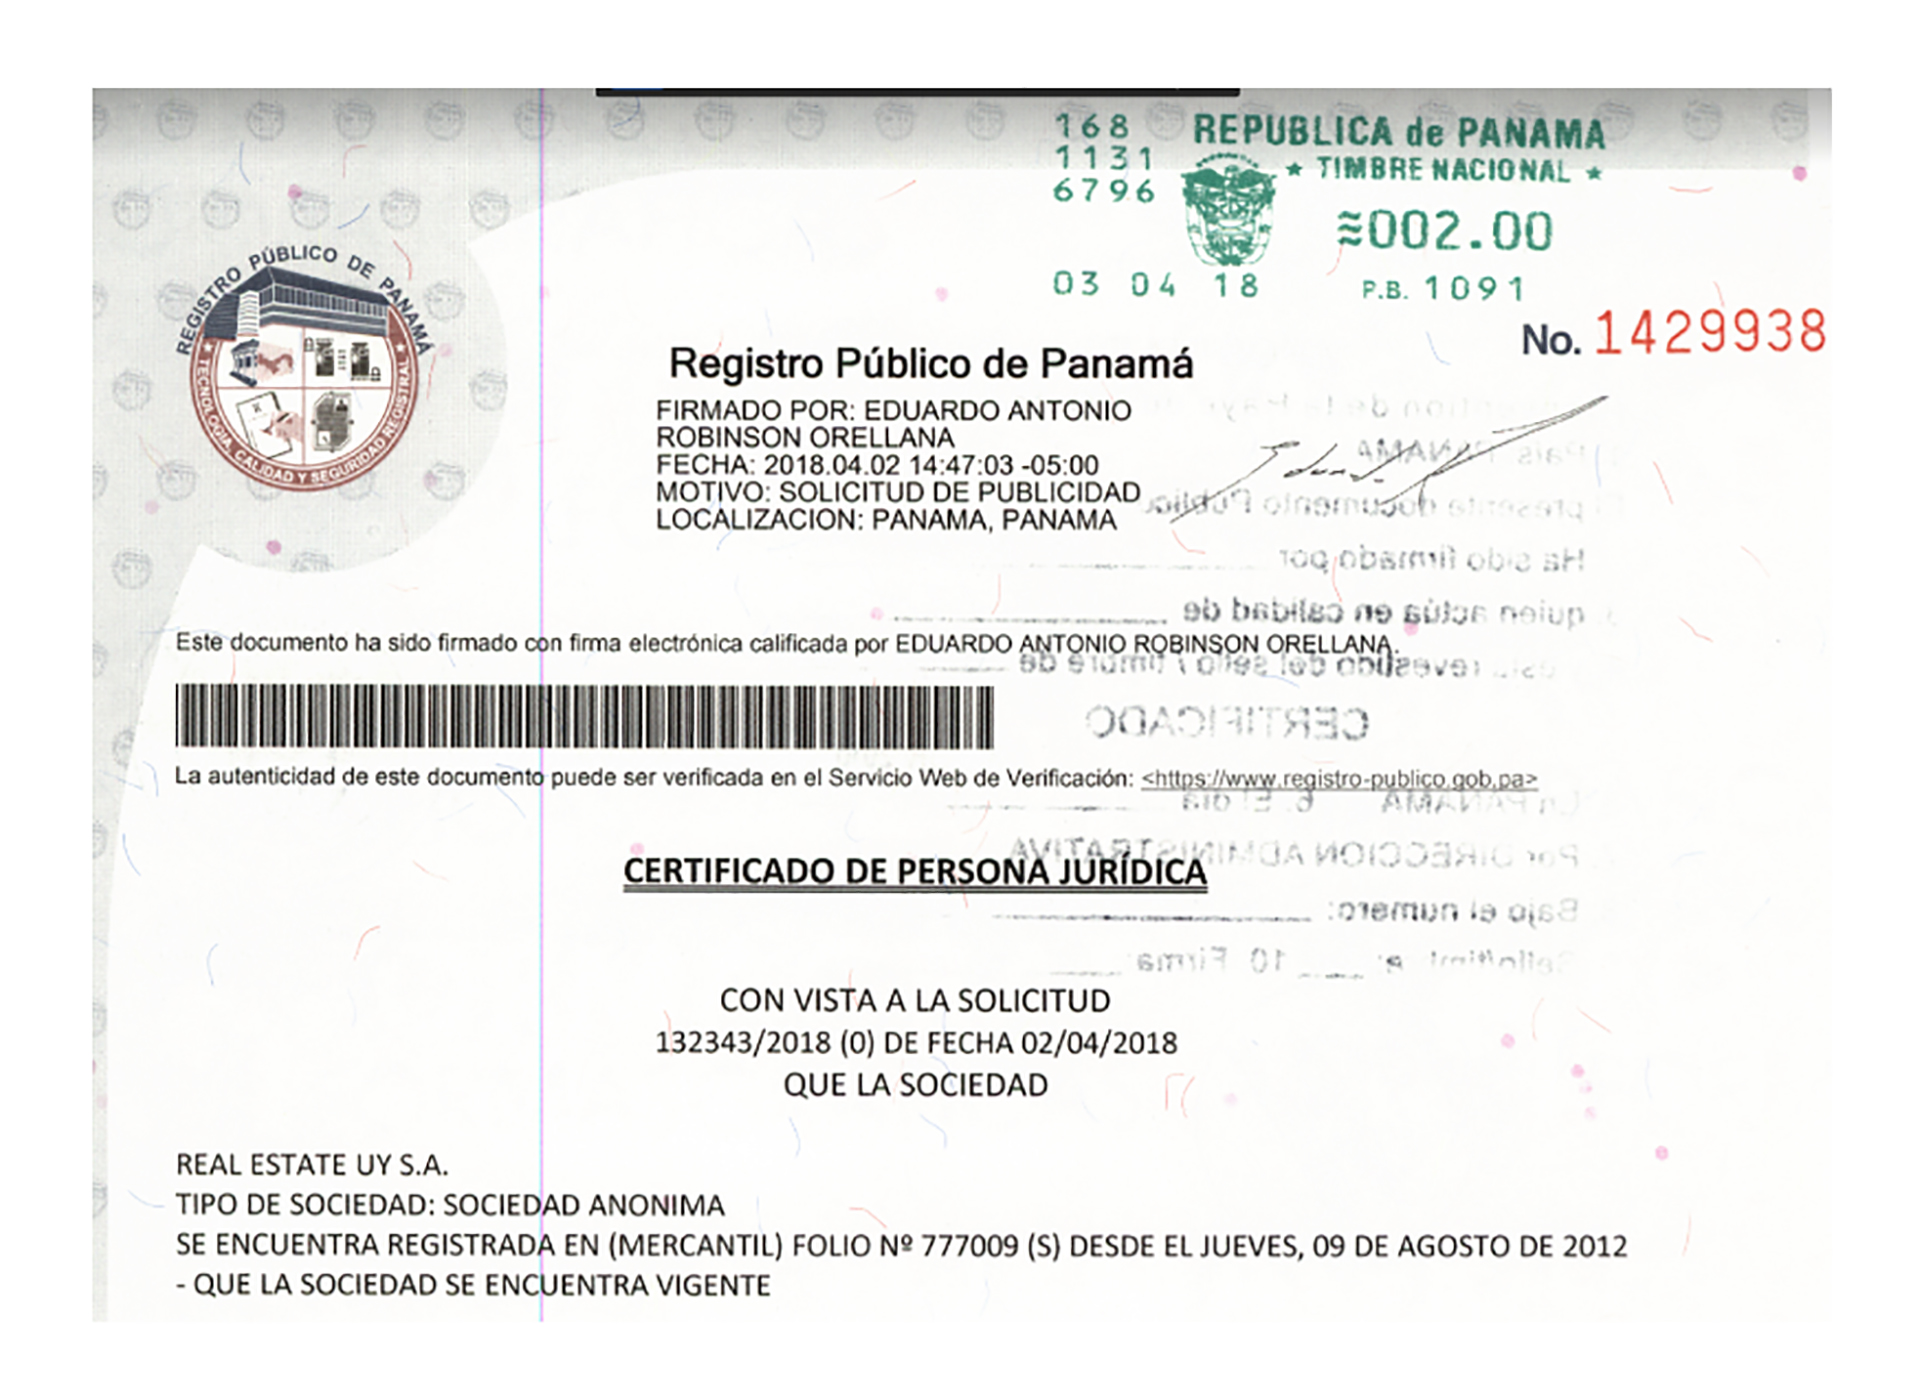 Certificado de constitución de Real Estate Uy SA, creada en Panamá el 9 de agosto de 2012, a través del estudio Alcogal 